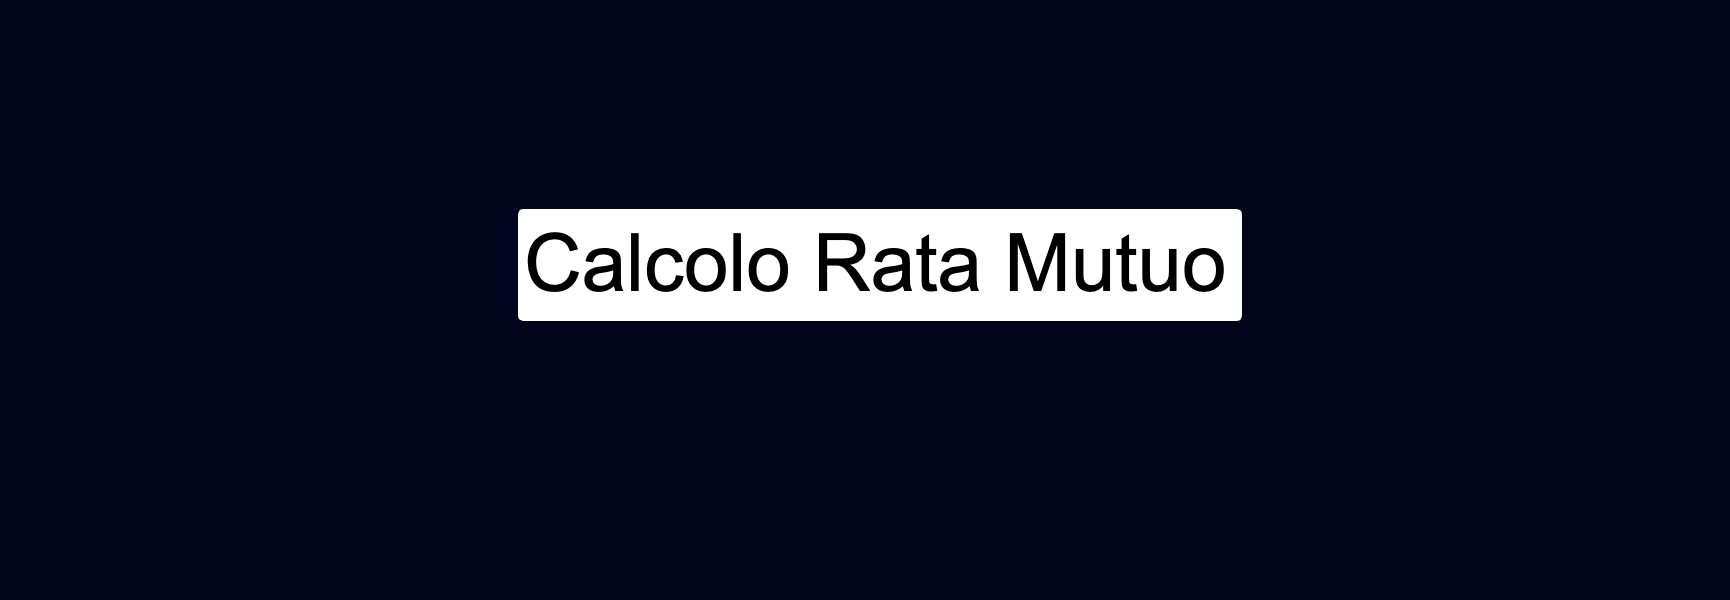 Calcolo Rata Mutuo